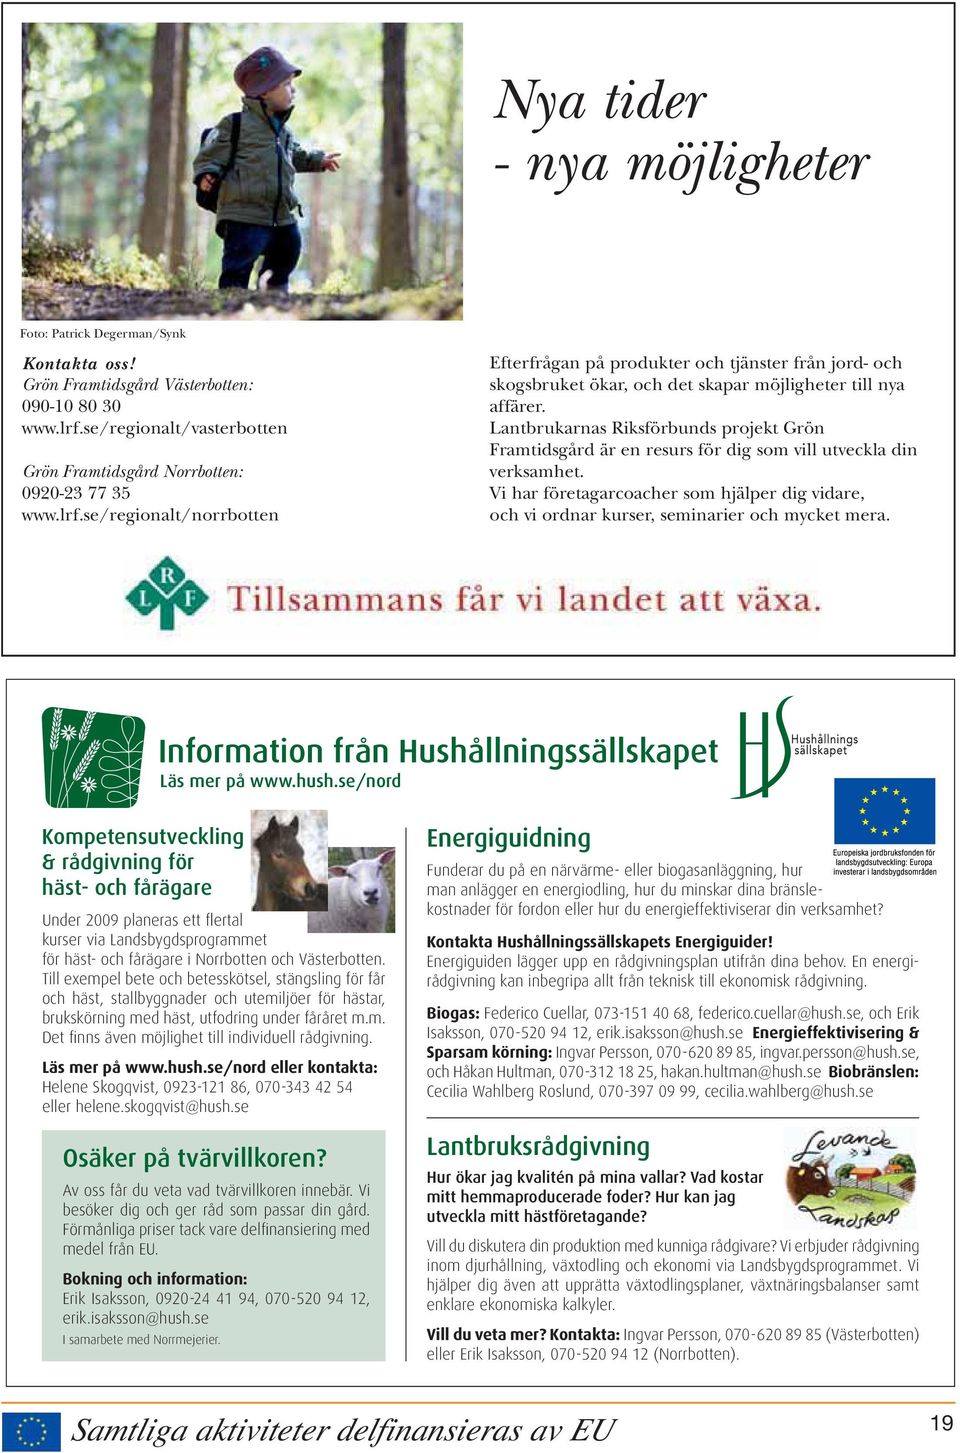 Lantbrukarnas Riksförbunds projekt Grön Framtidsgård är en resurs för dig som vill utveckla din verksamhet.